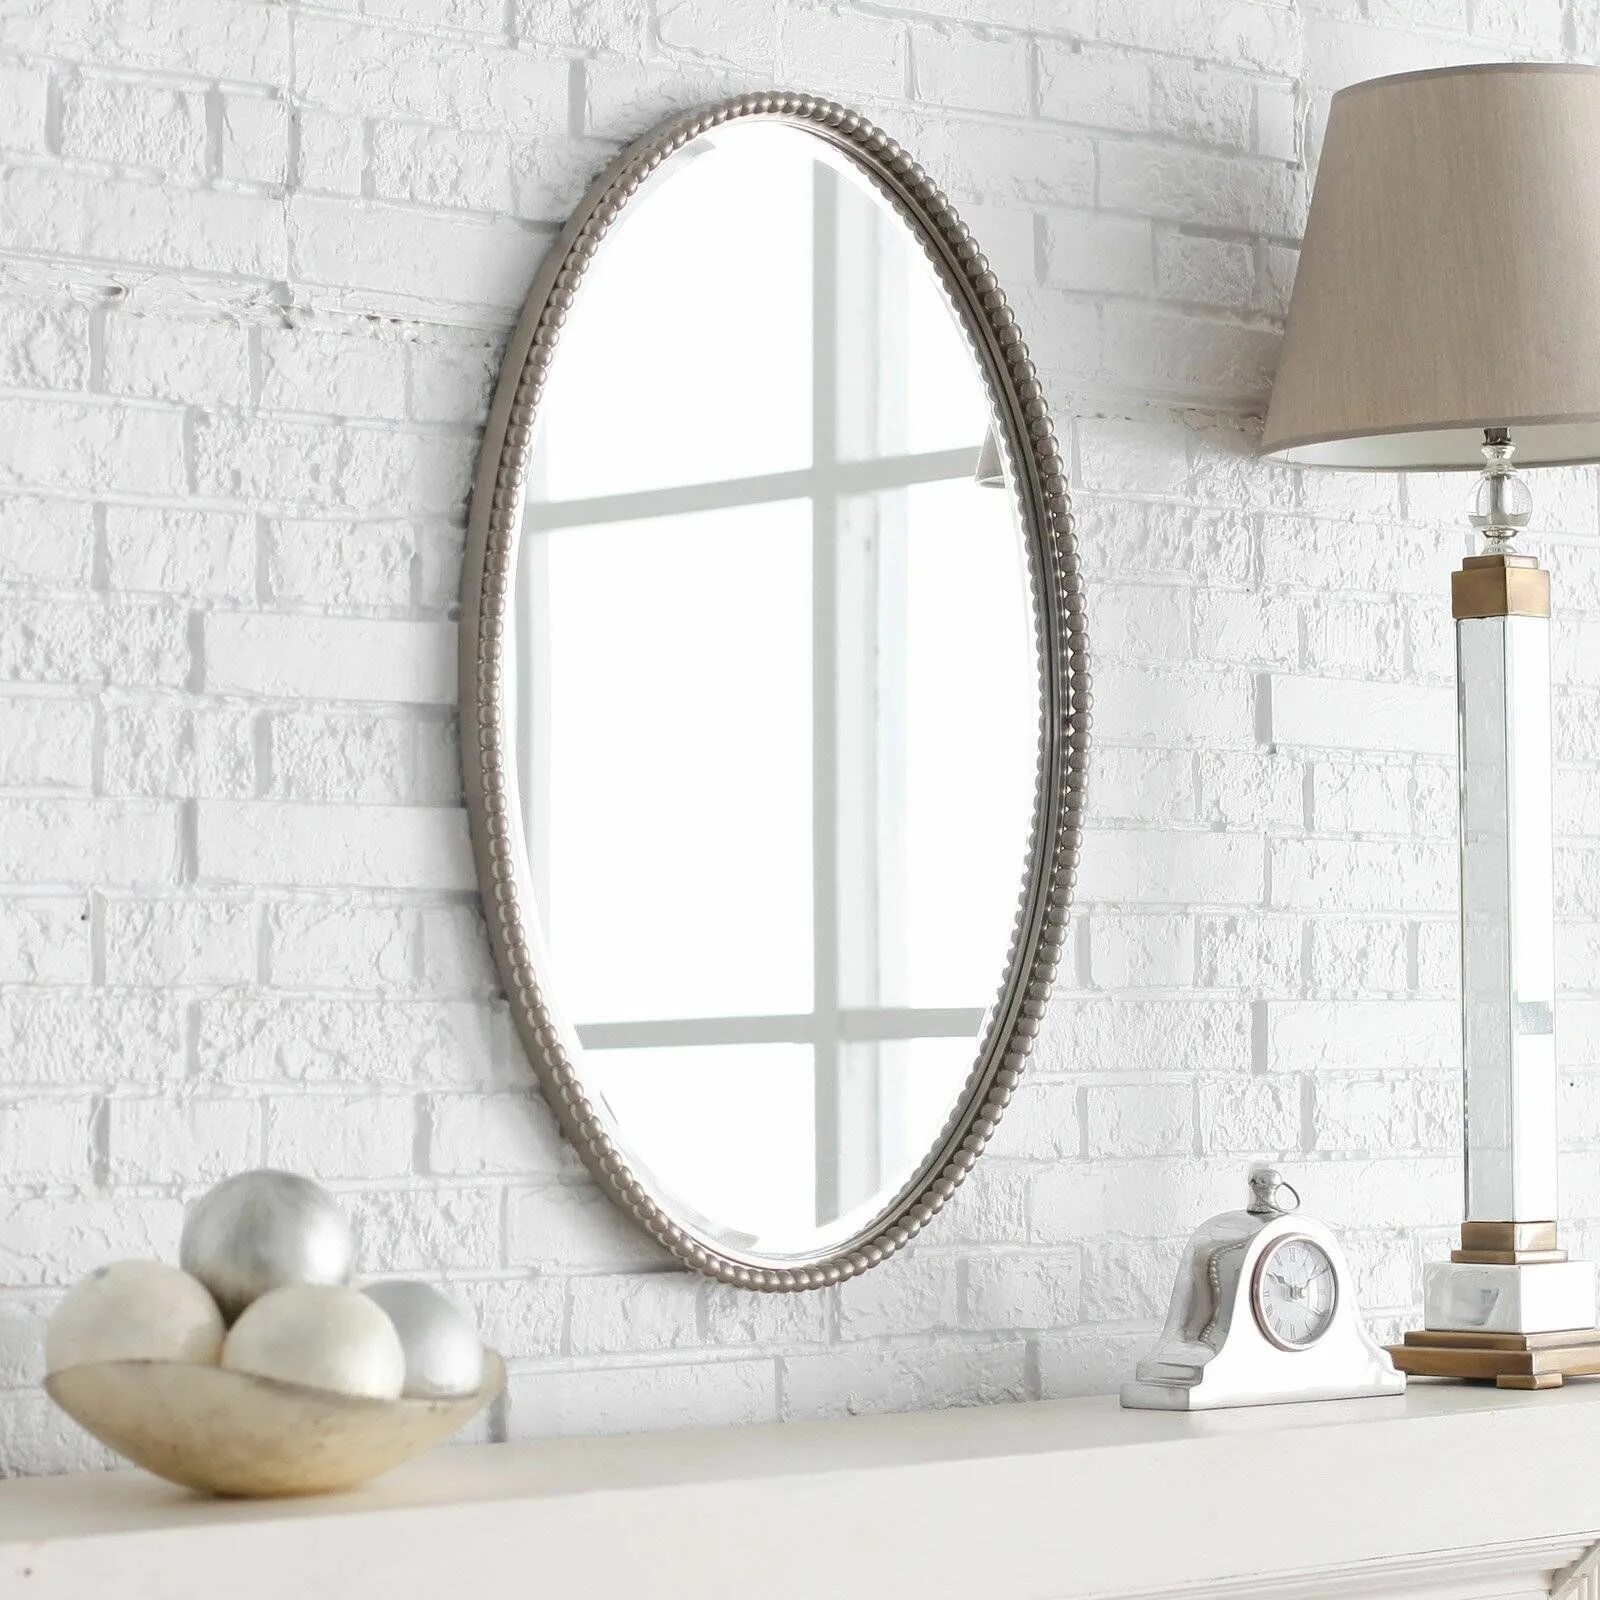 Подвесное зеркало для ванной. Зеркало овальное в ванную комнату. Овальное зеркало в интерьере. Овальное зеркало для ванной комнаты. Ванная с овальным зеркалом.